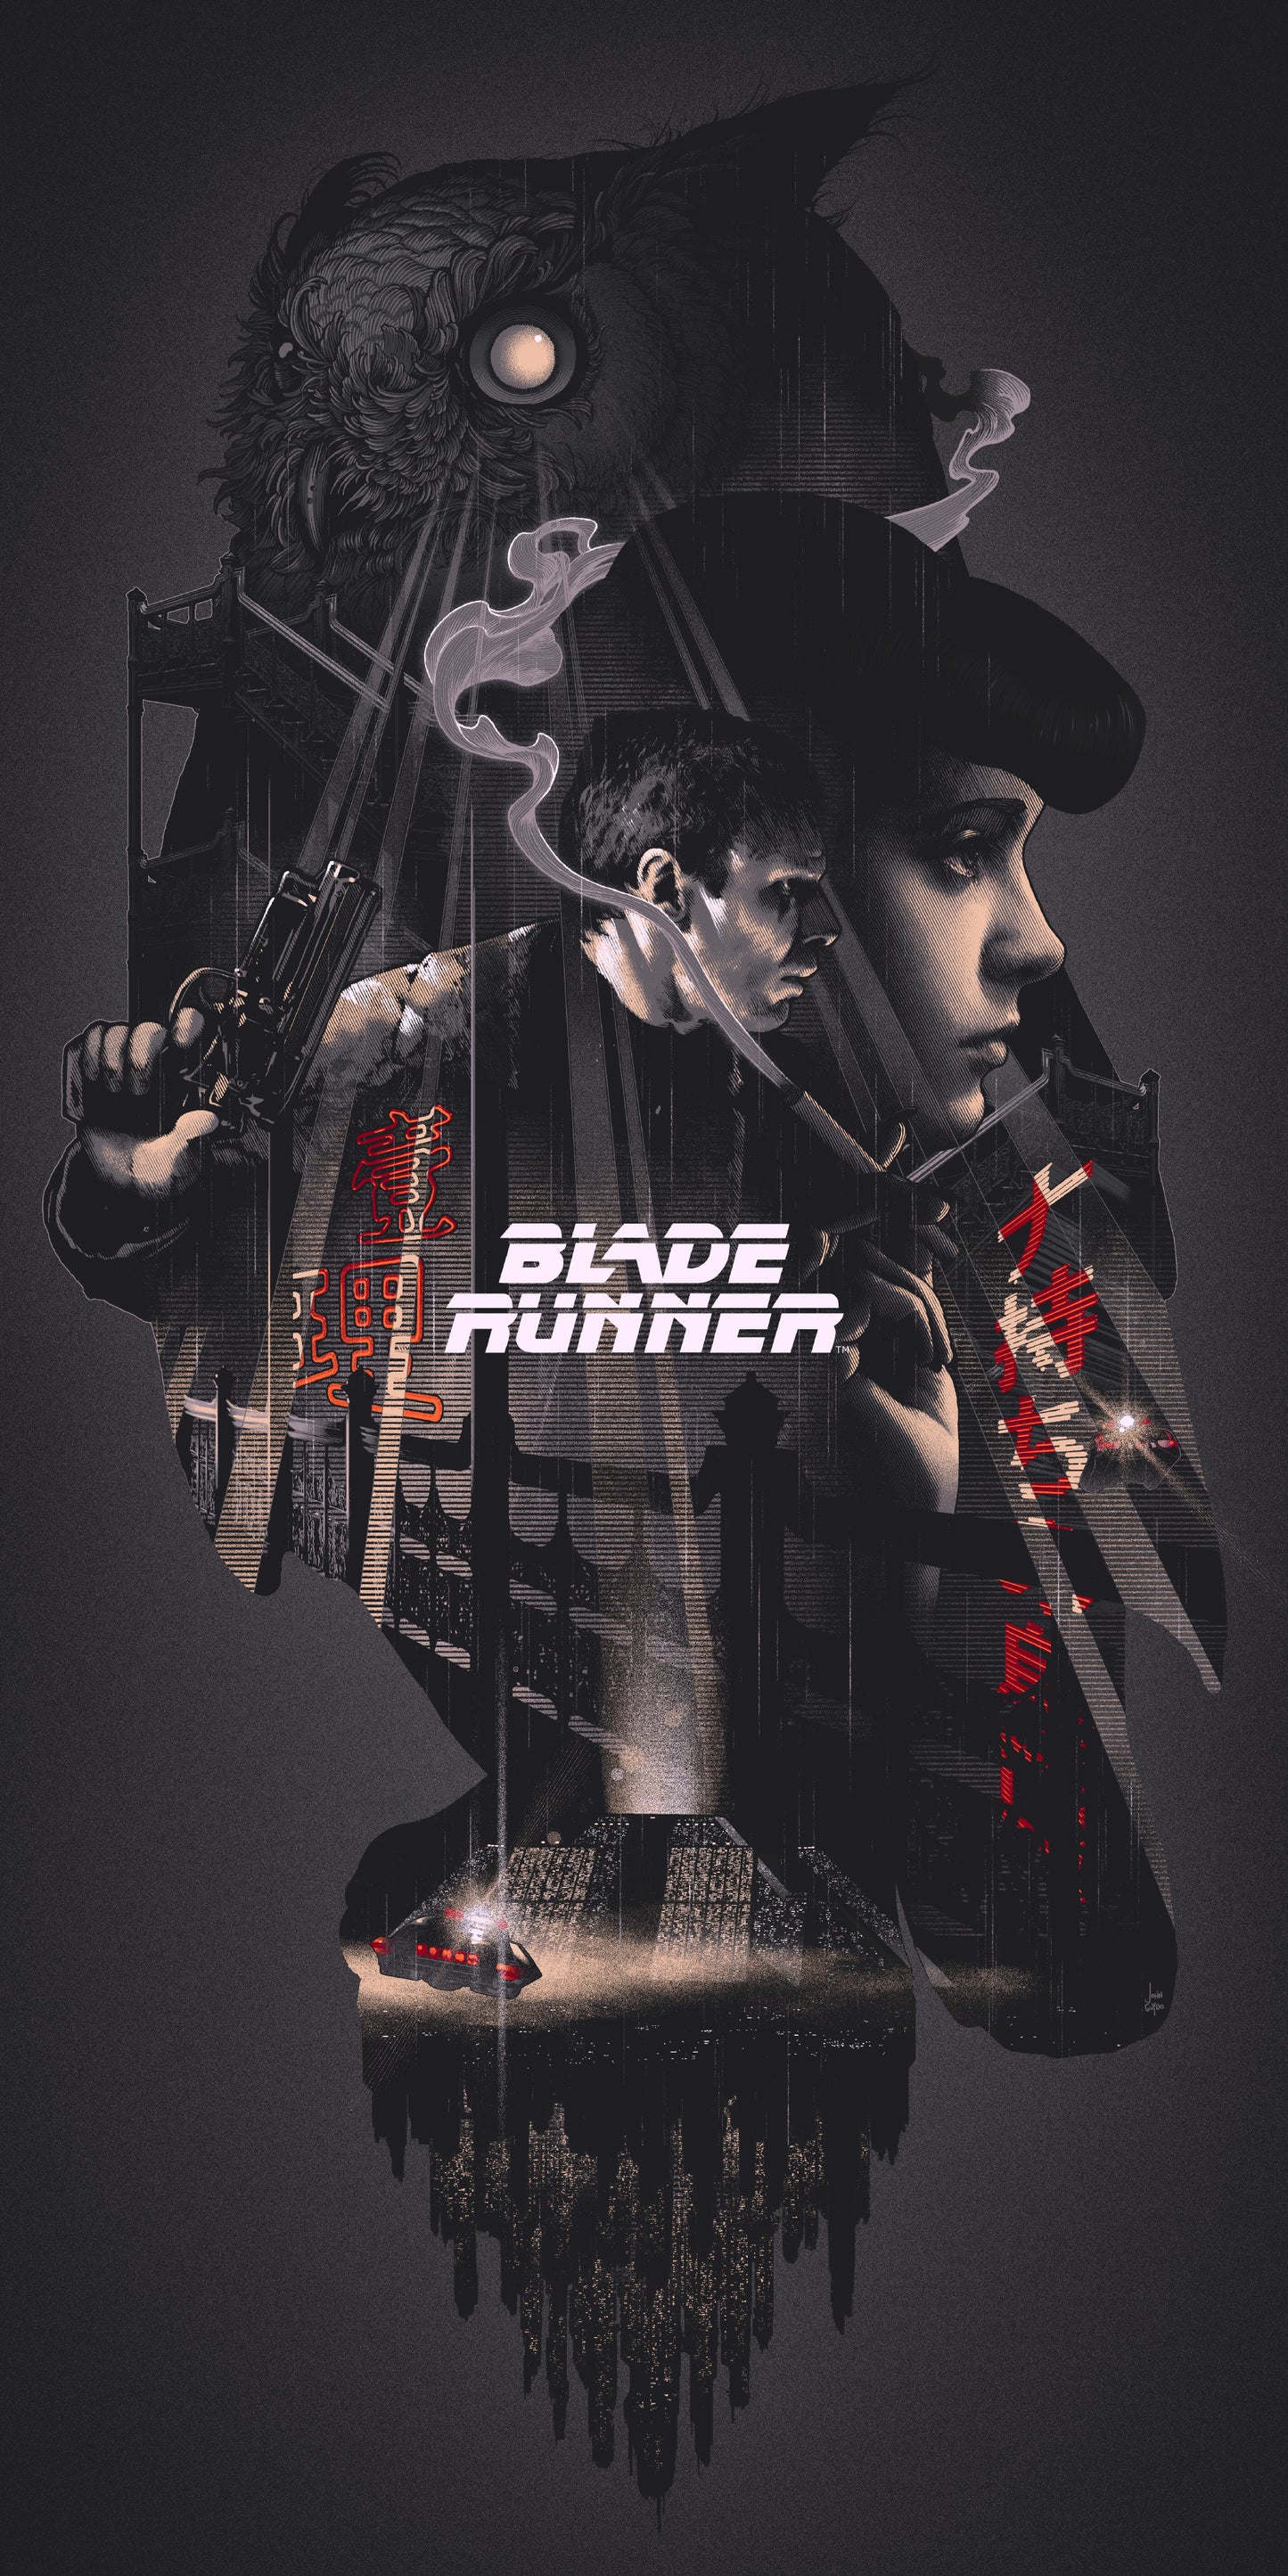 John Guydo "Blade Runner"